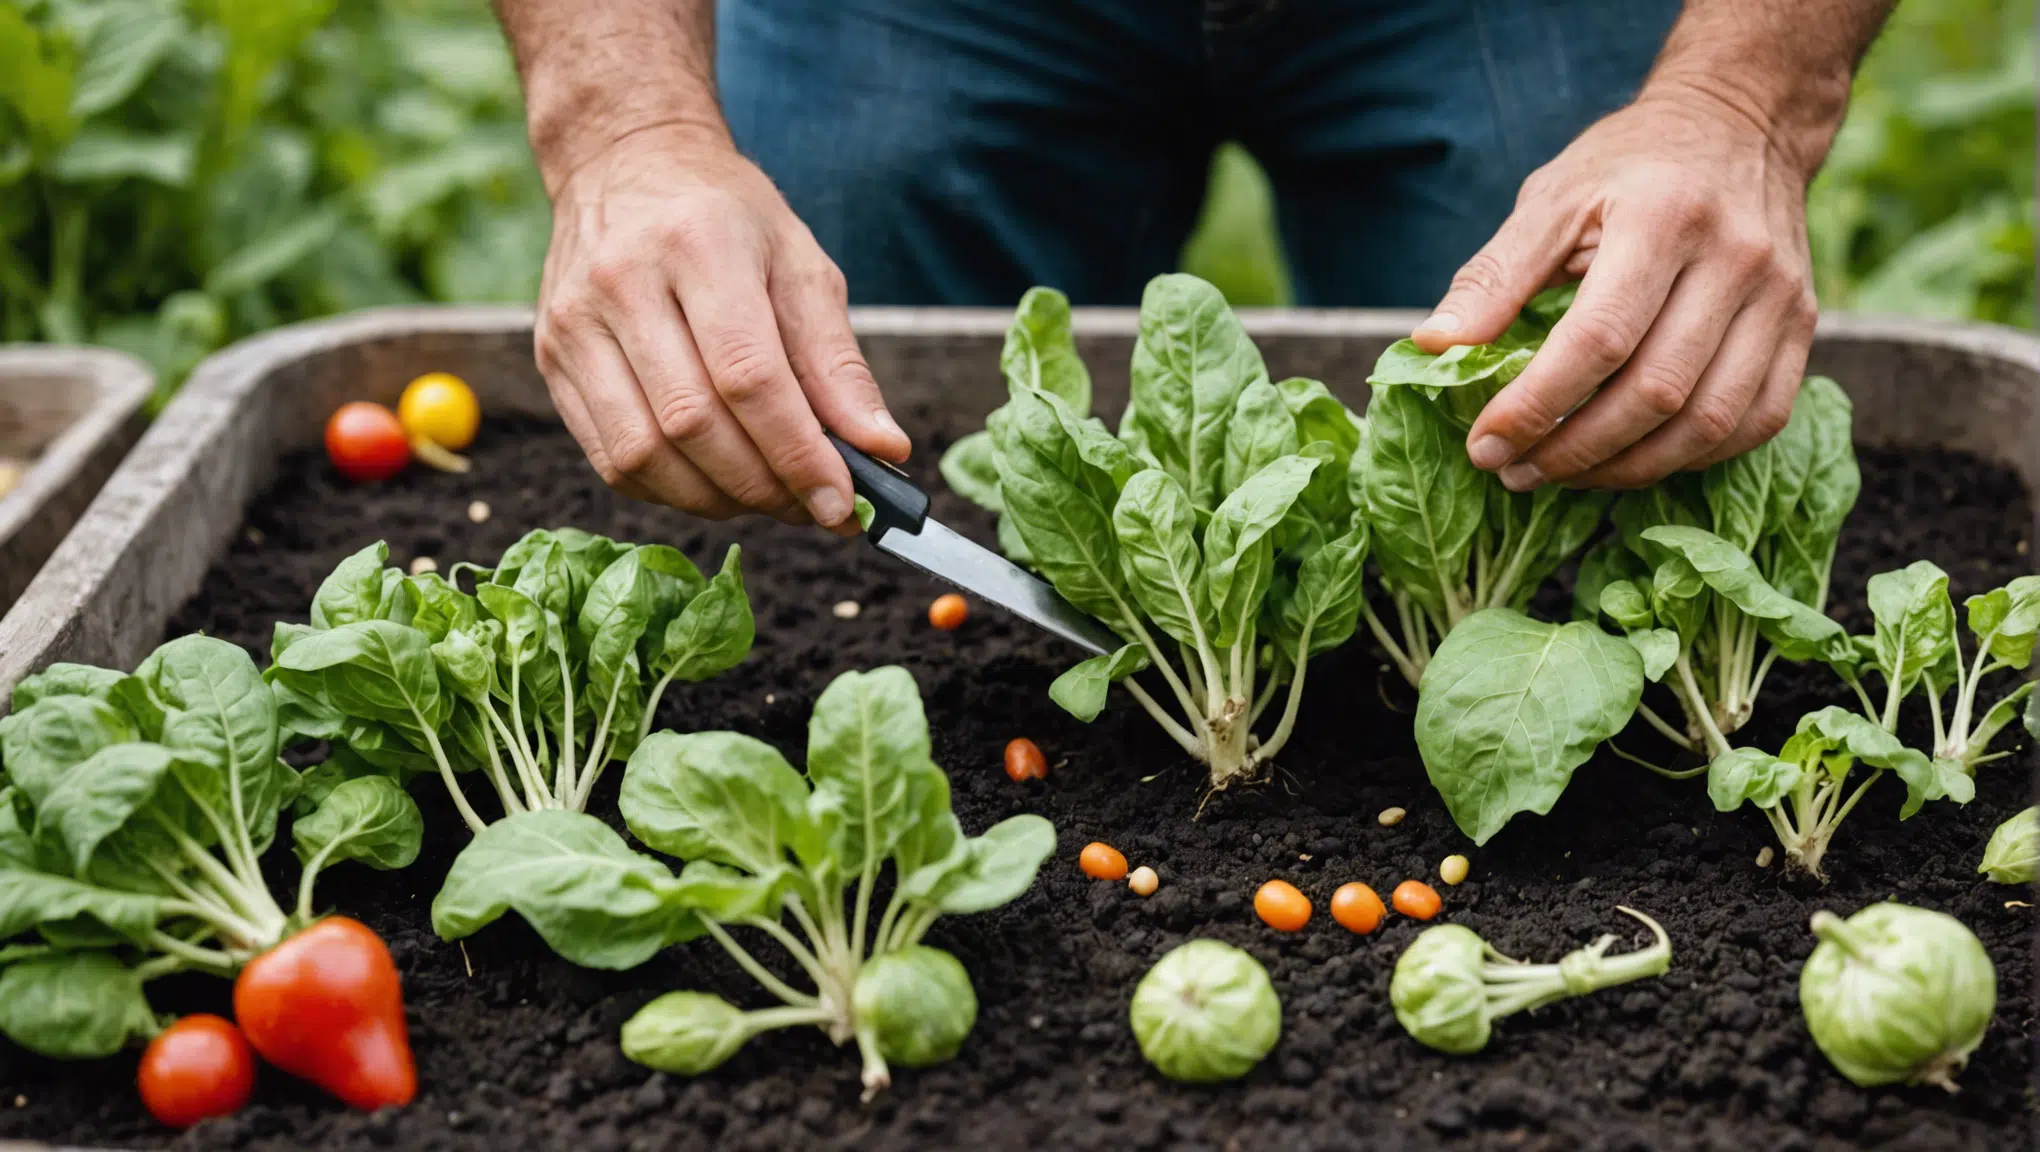 découvrez comment cultiver vos légumes toute l'année sans aucun effort avec ces astuces ingénieuses pour une alimentation saine et durable.